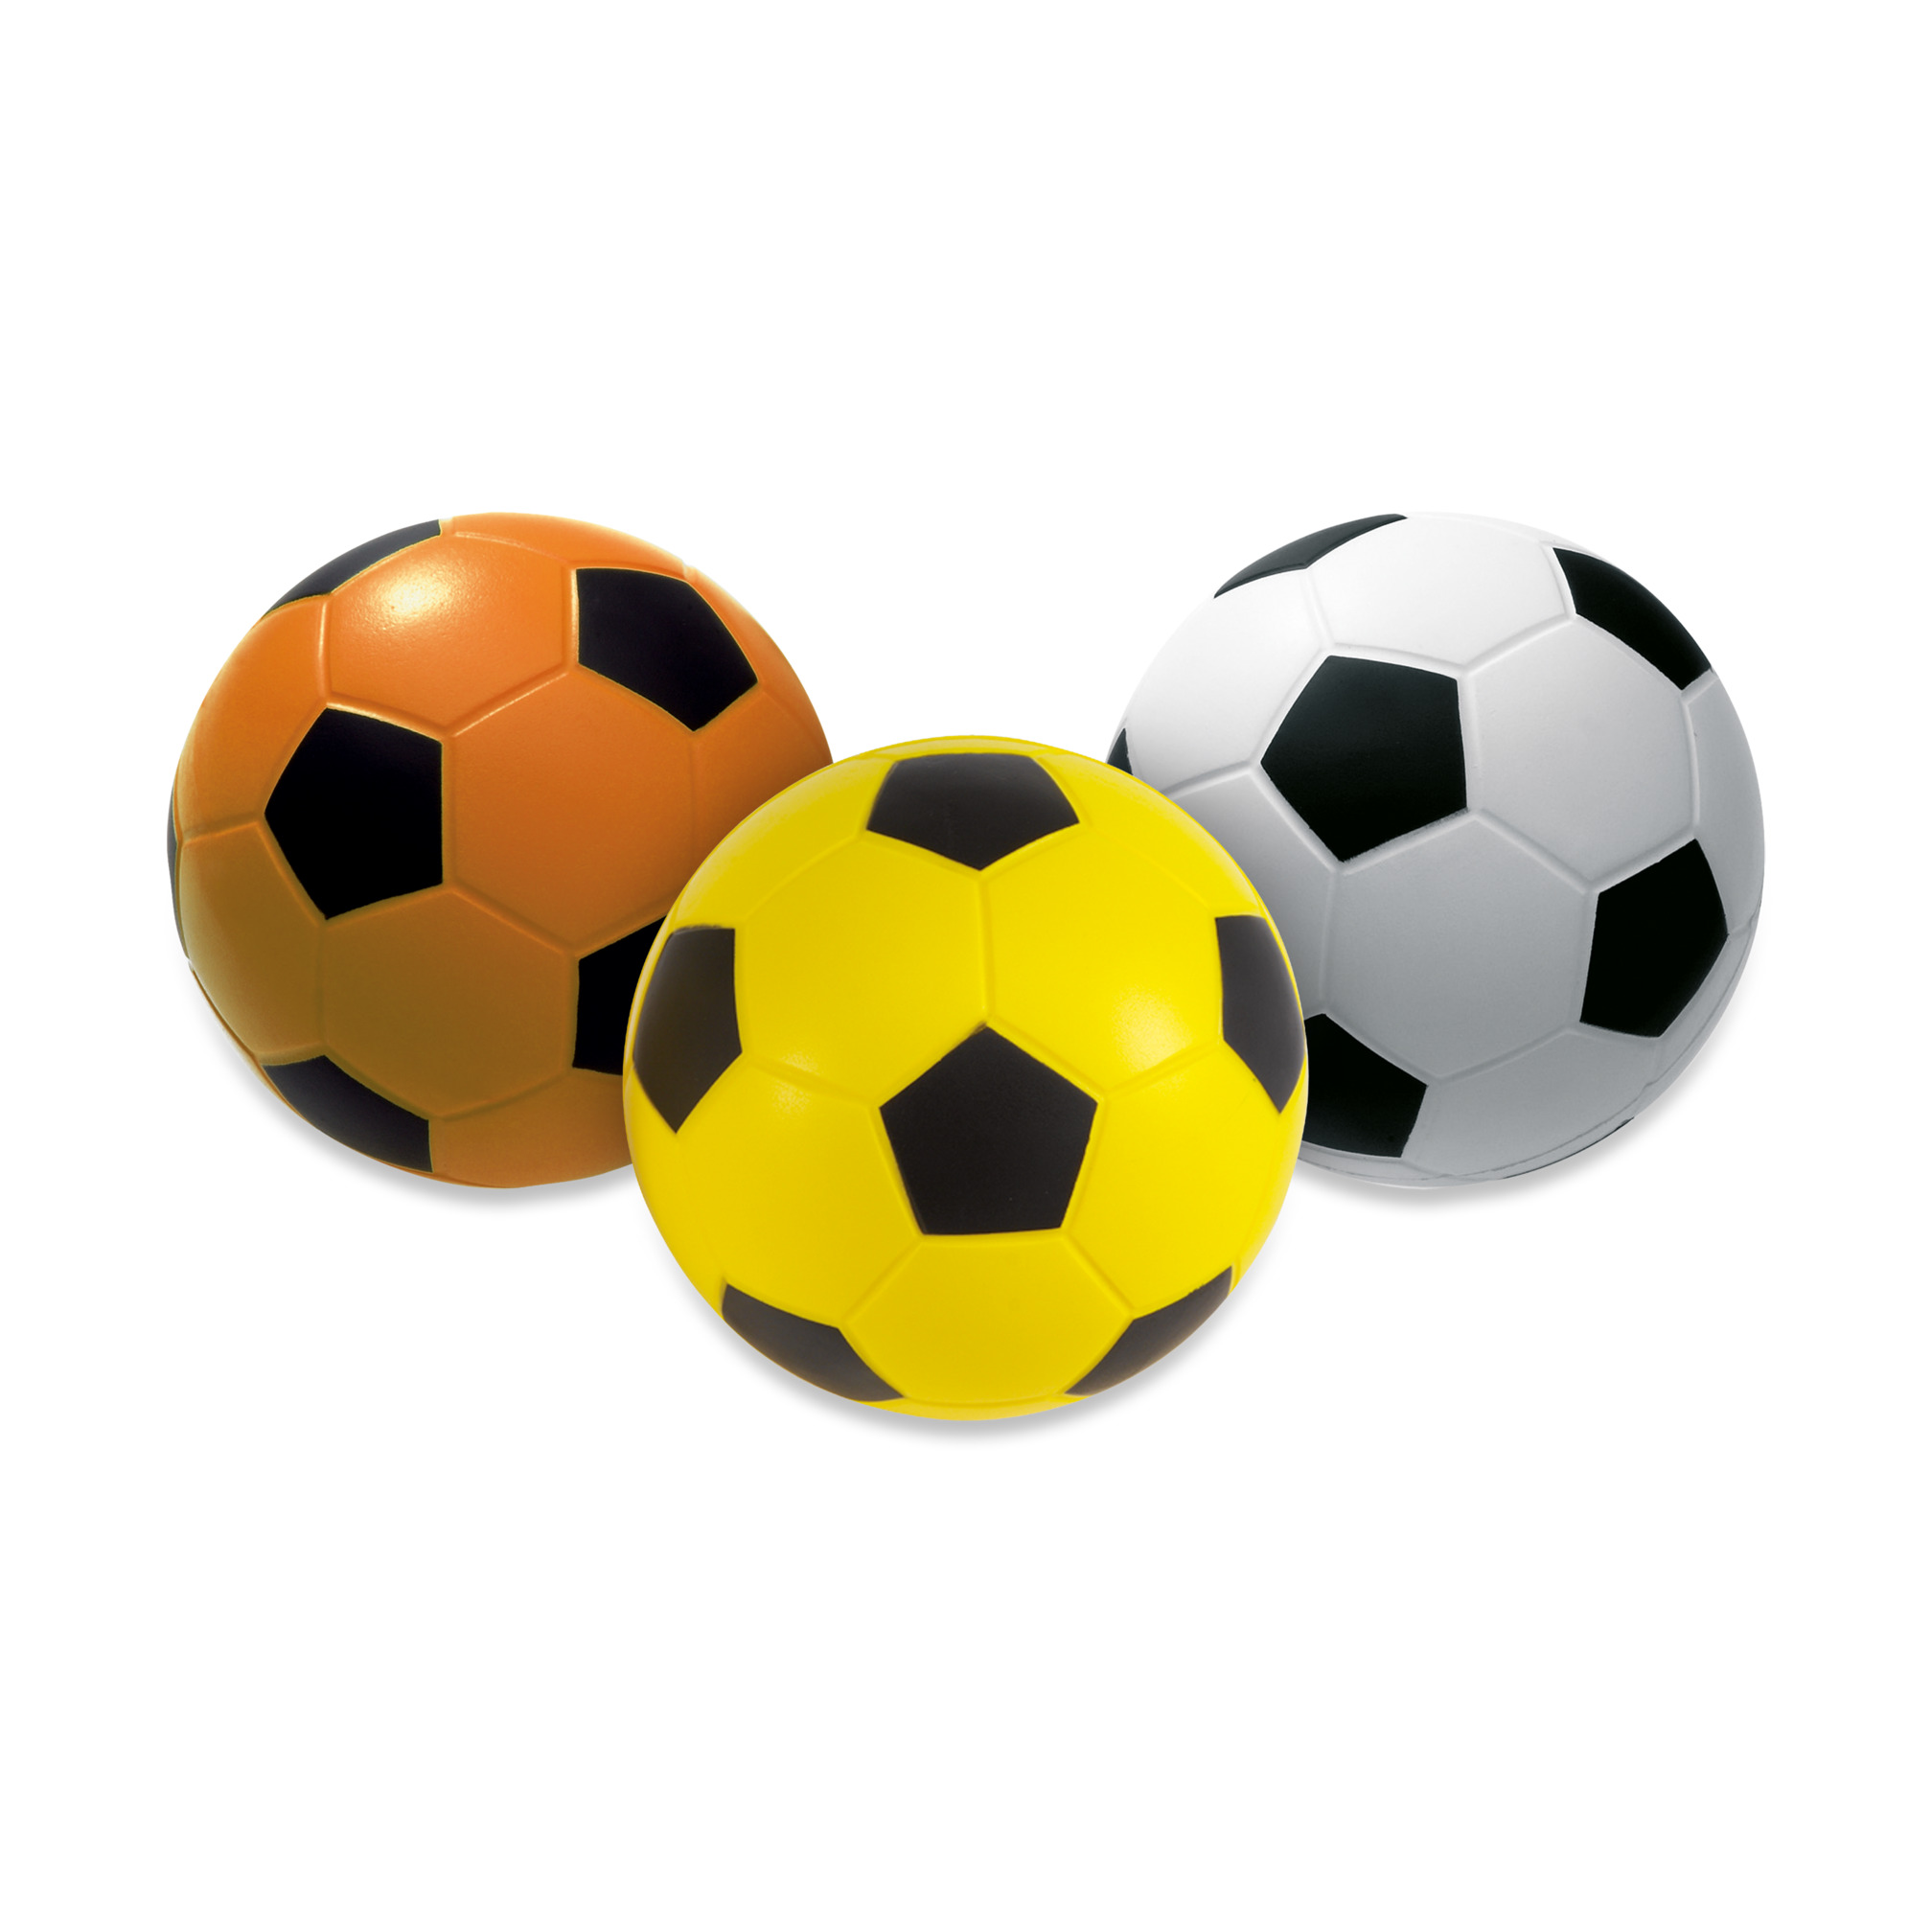 Voetbal foam met huid, oranje/zwart